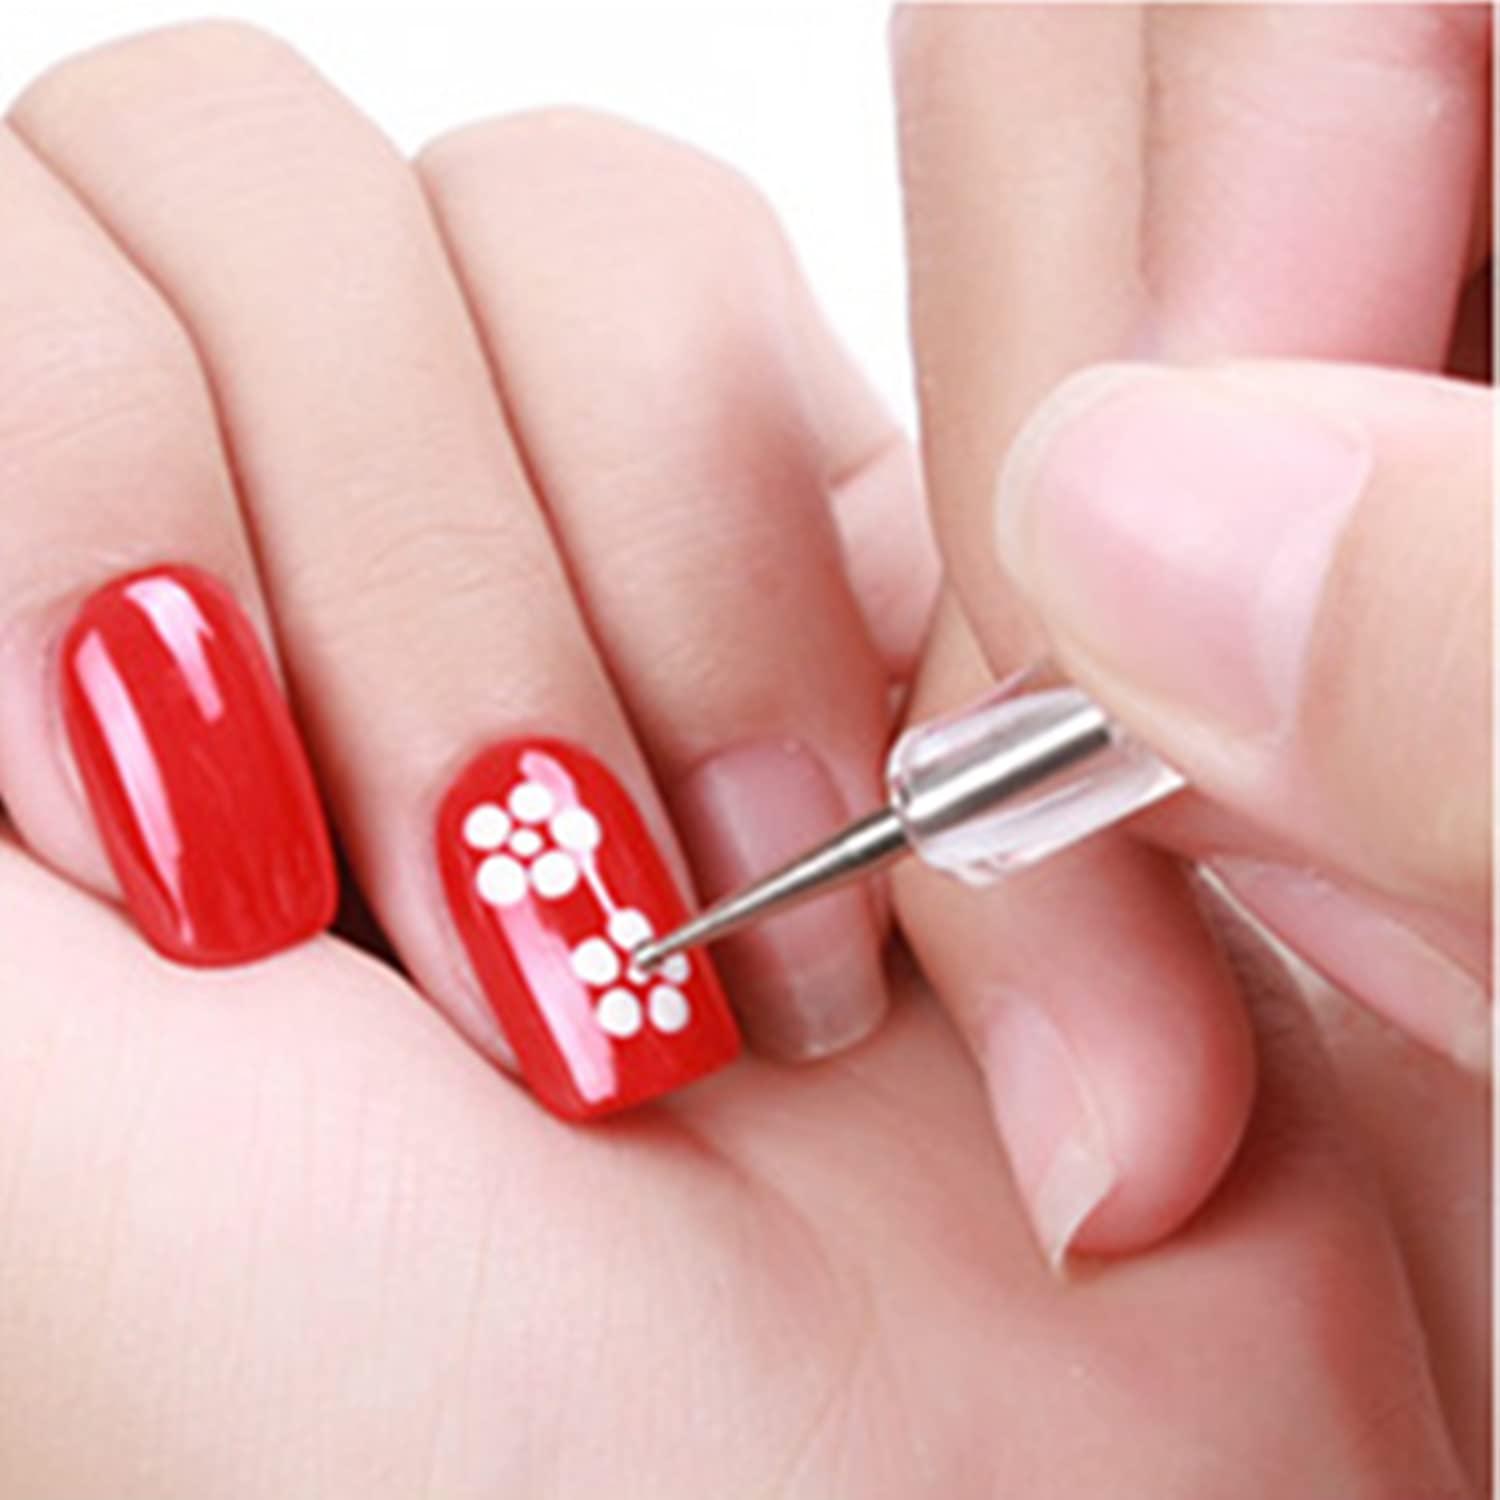 5 pc 2 Way Dotting Pen Tool Nail Art Tip Dot Paint Manicure kit (5PC)